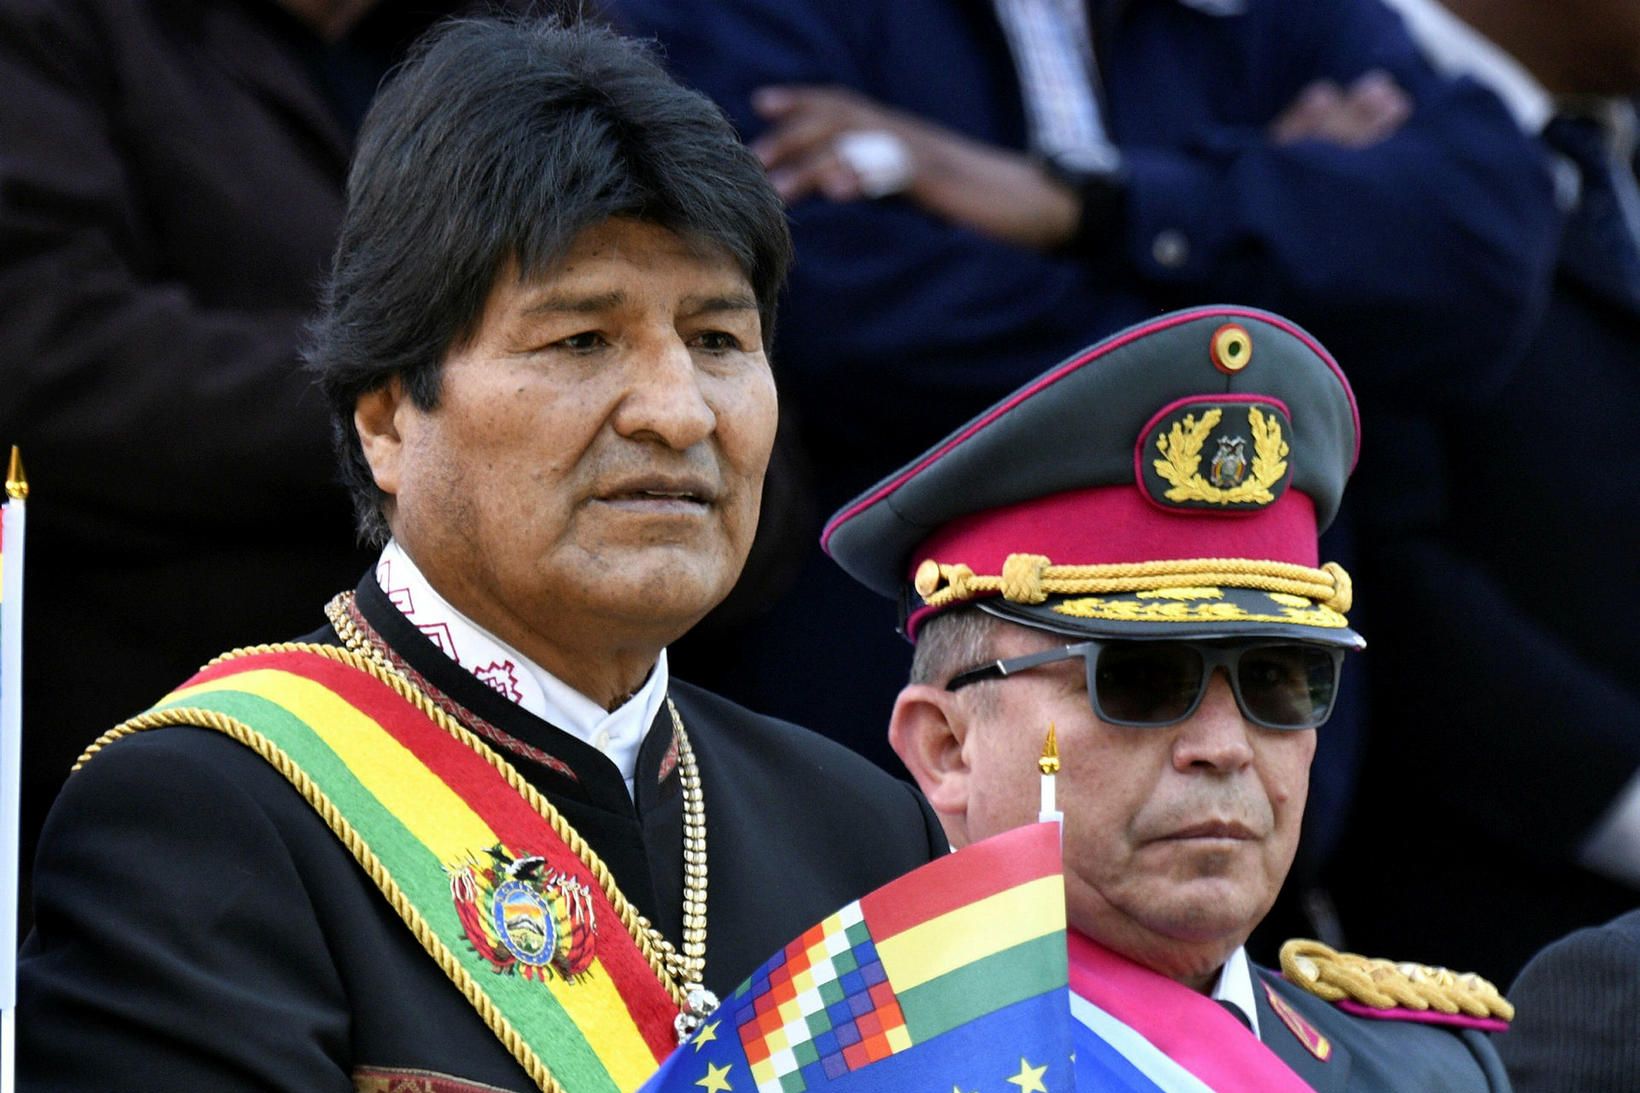 Evo Morales ásamt hershöfðingjanum Williams Kalim­an á góðri stundu fyrr …